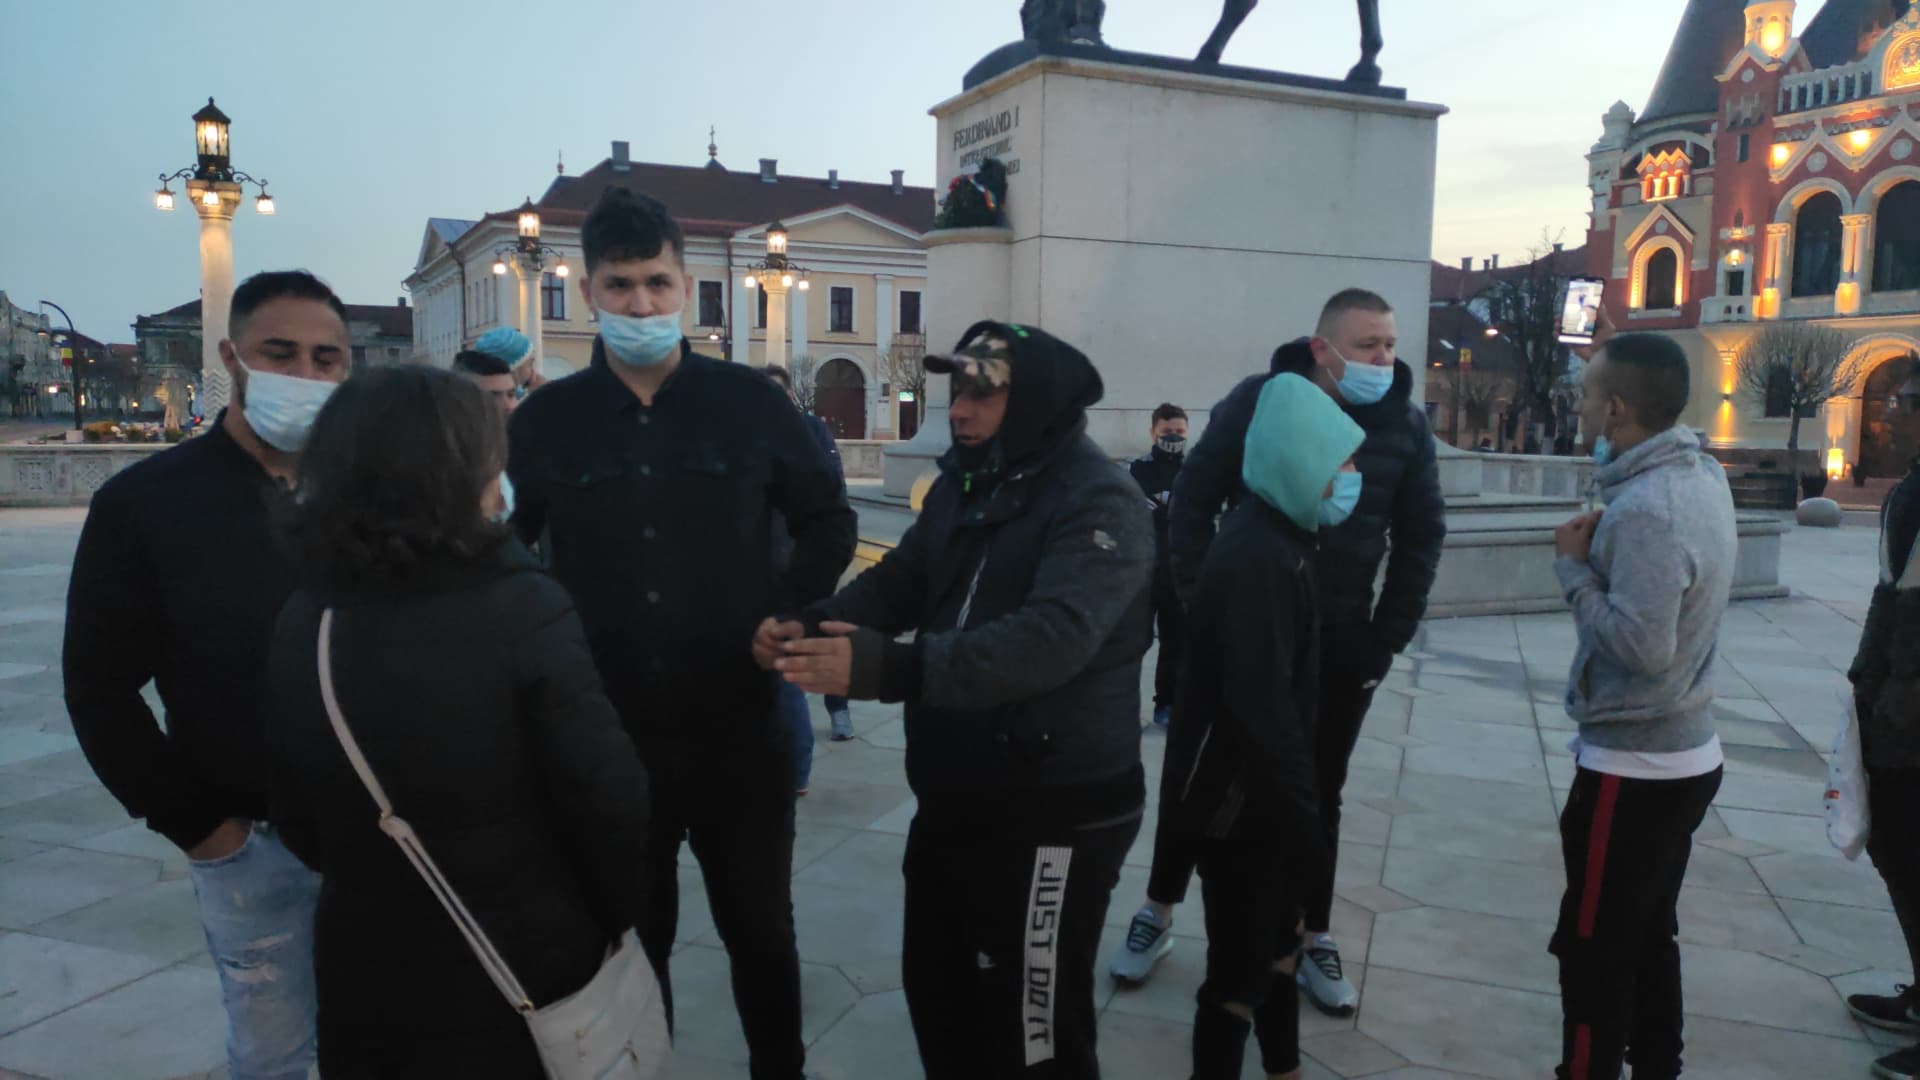 FOTO: Protest restricții covid-19 în Oradea 05.04.2021